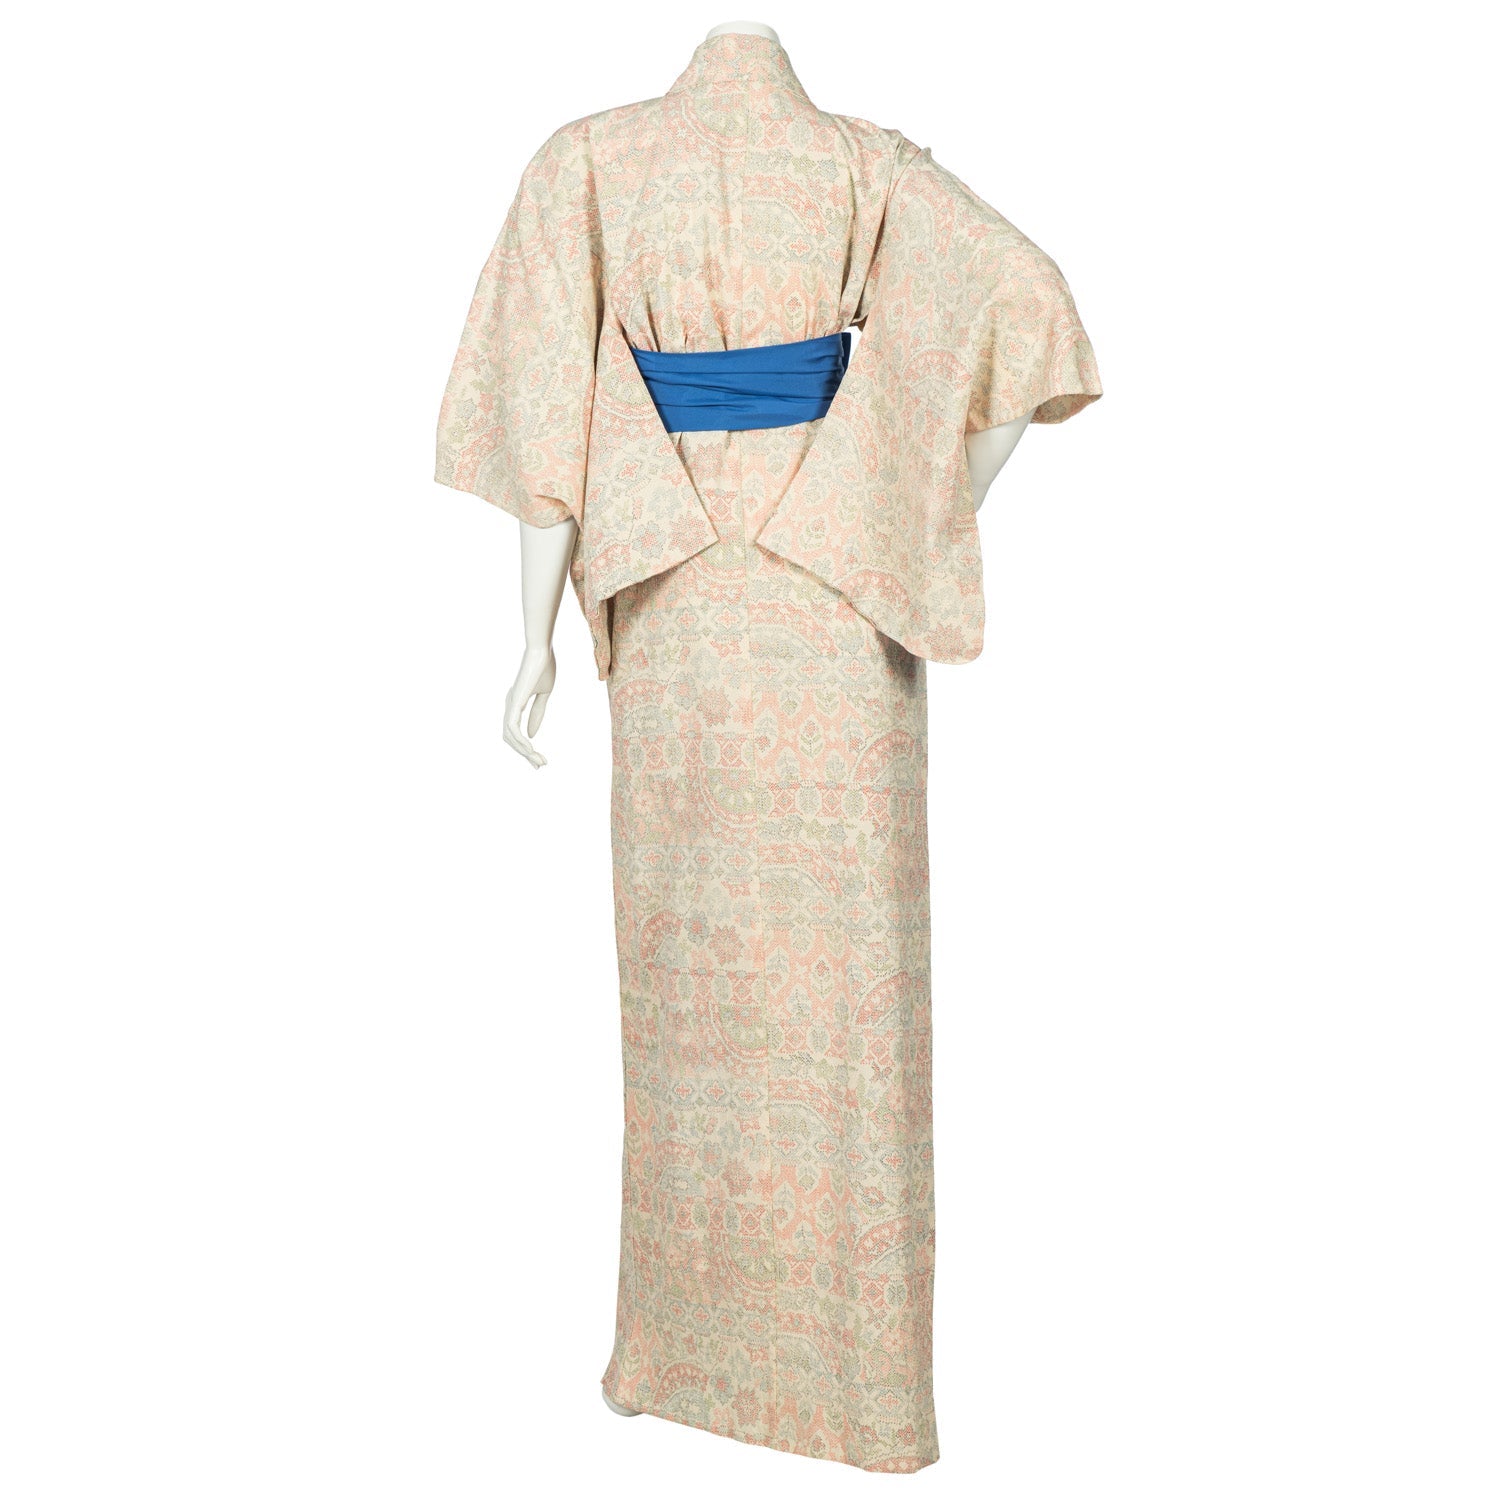 Echizen Vintage Japanese Kimono Robe